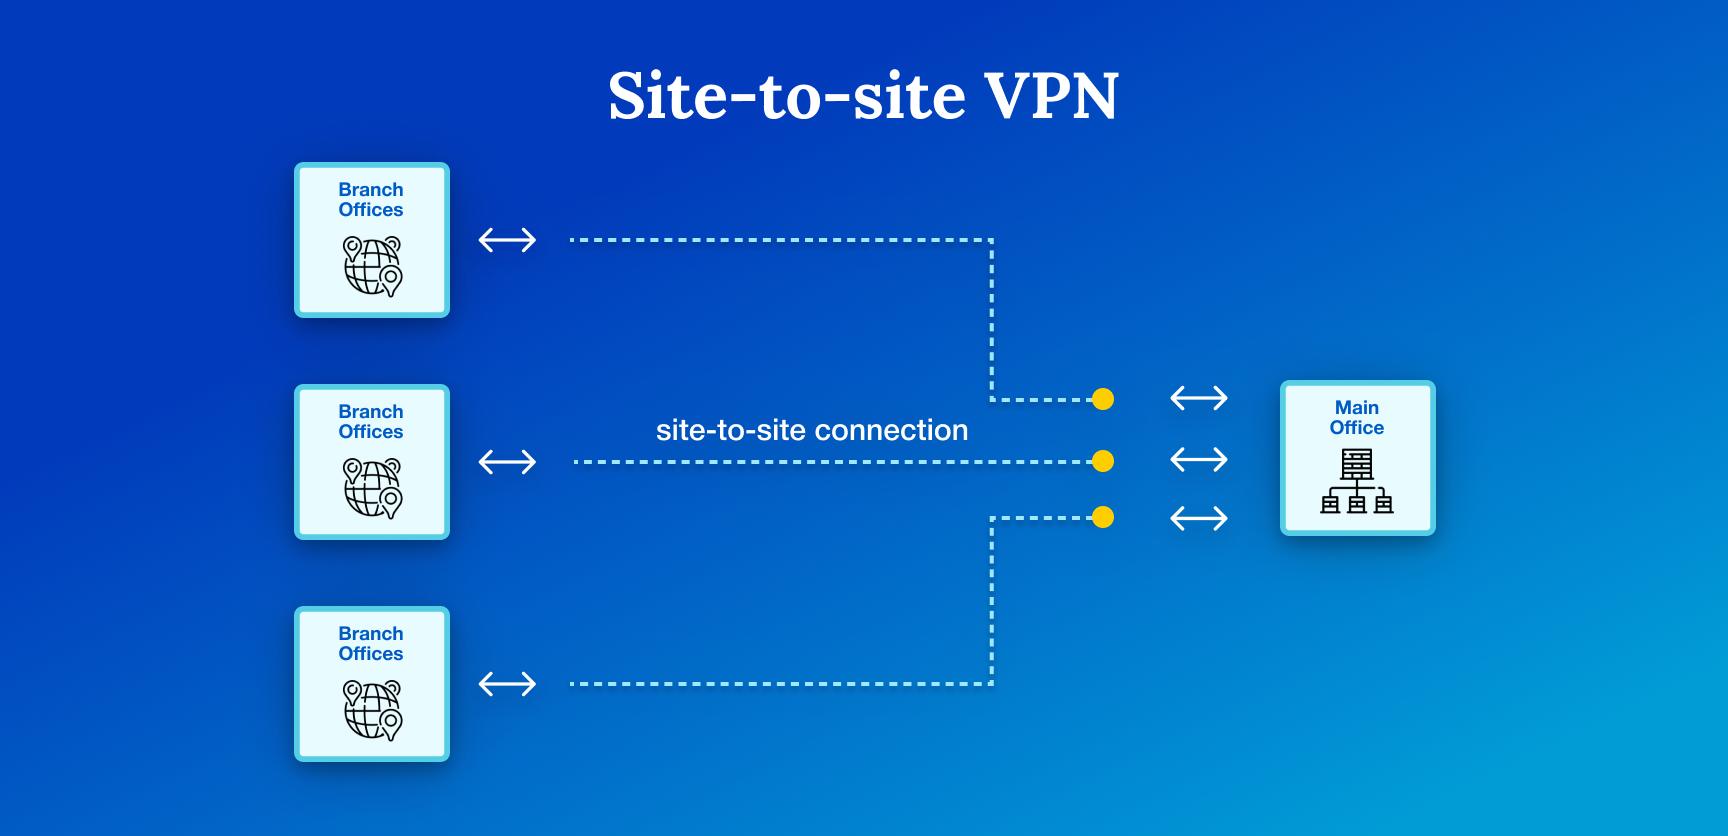 Advantages of Site to Site VPN